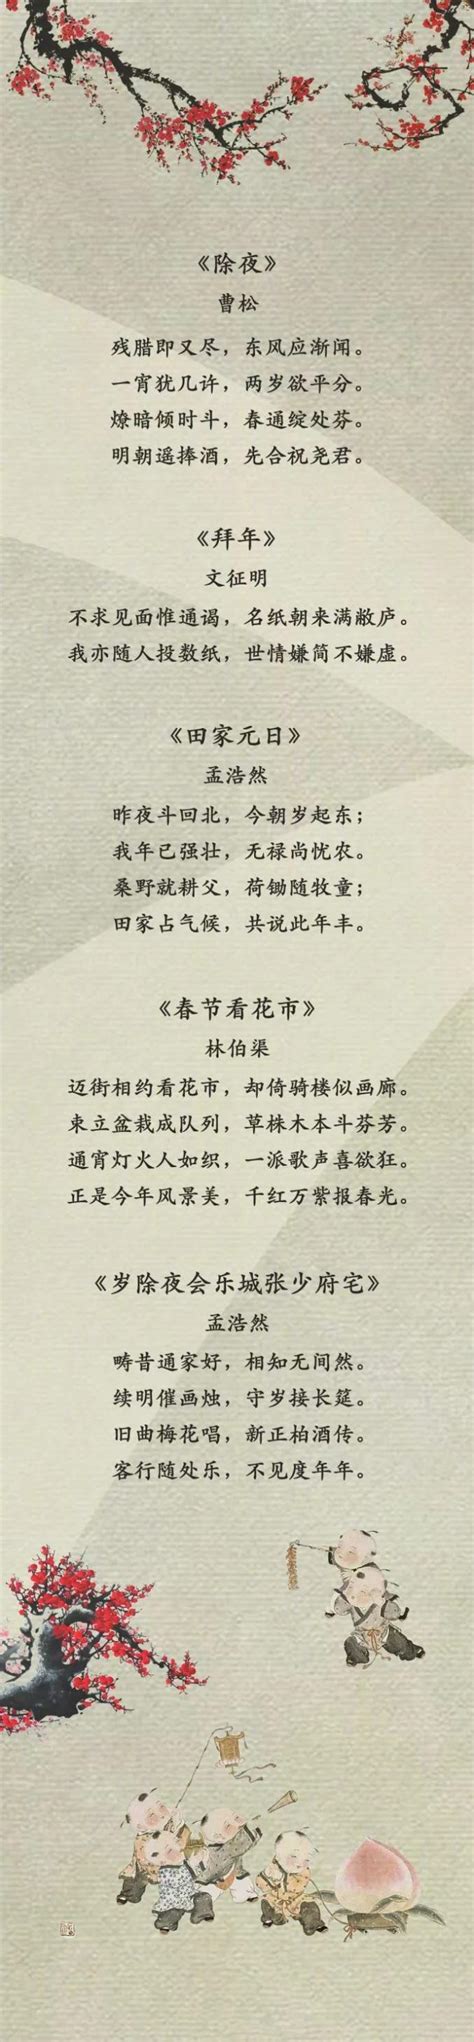 春节现代诗歌